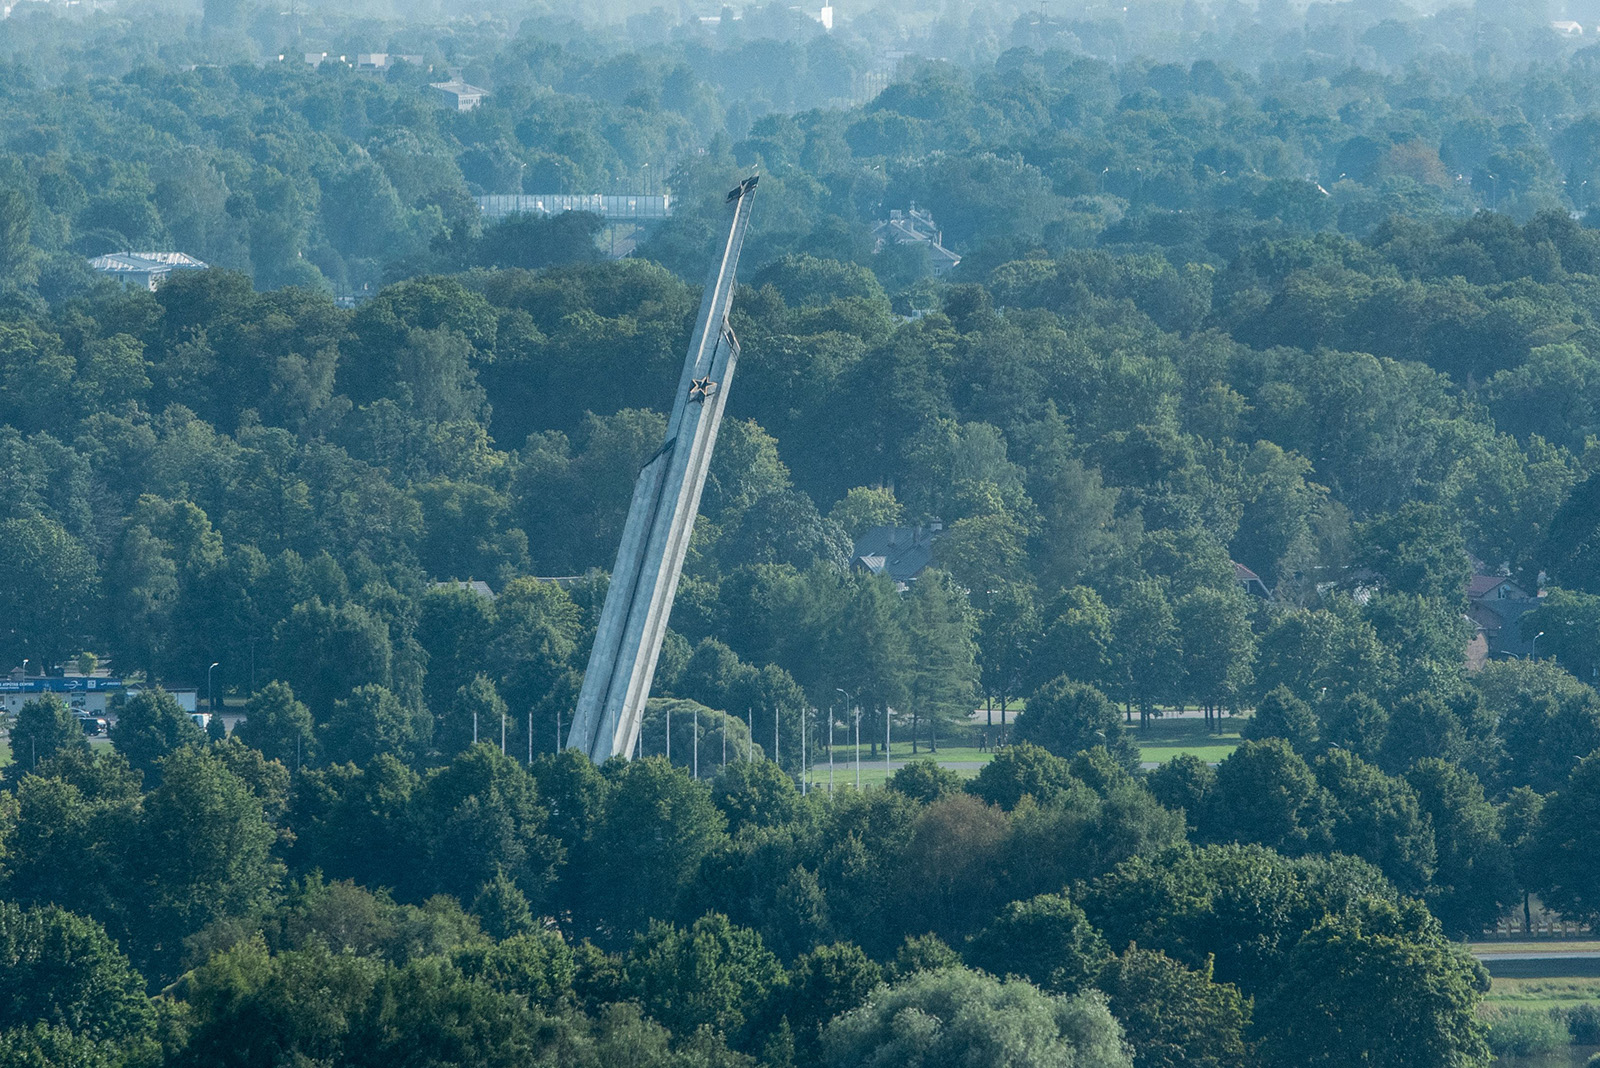 Letonia heq monumentin e ndërtuar gjatë epokës sovjetike